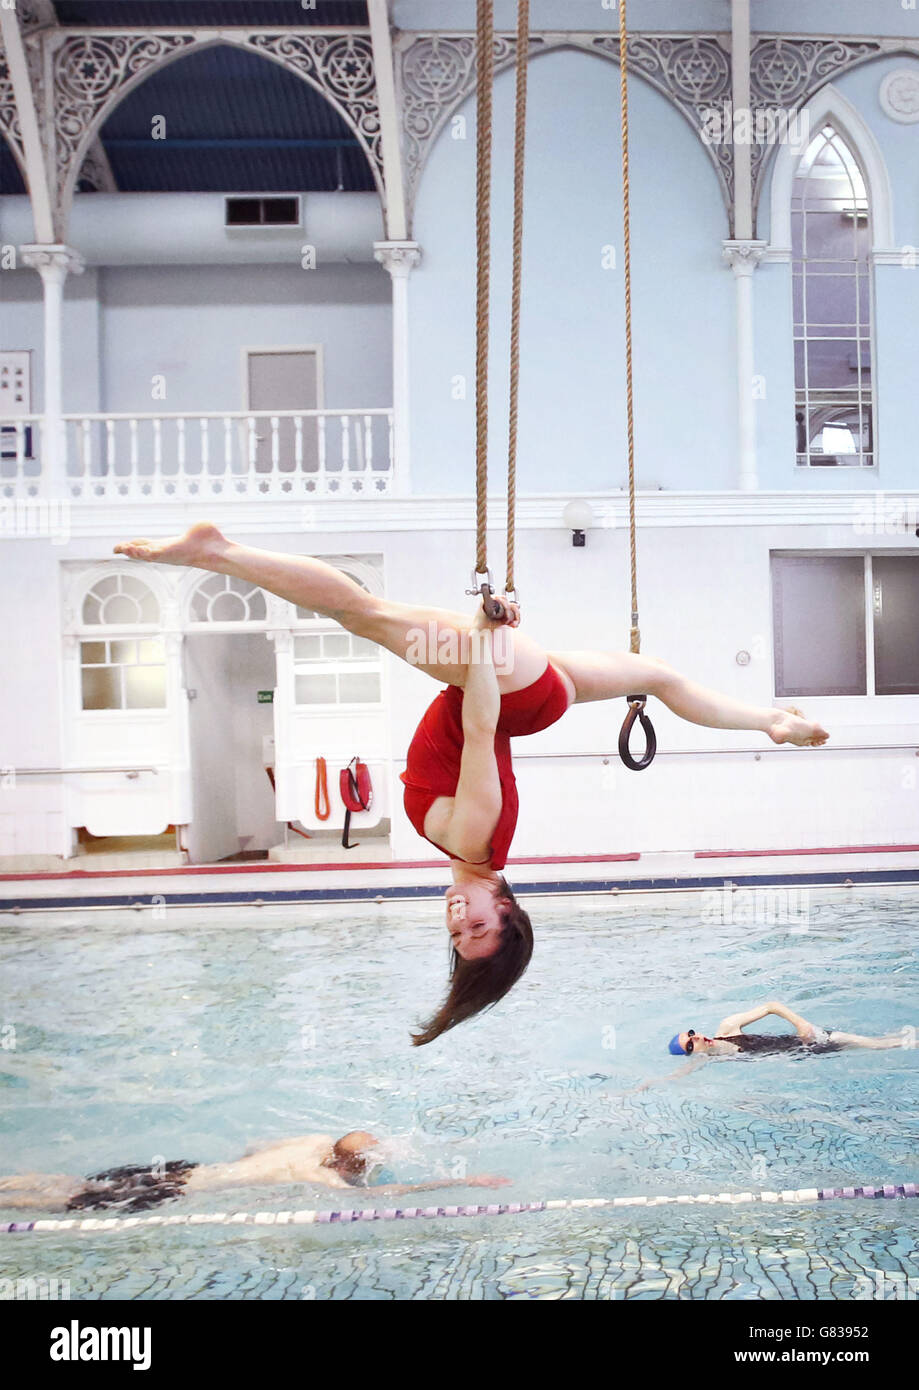 Danuta Ramos vom All or Nothing Aerial Dance Theatre tritt auf einem Trapez über einem Swimmingpool im Western Baths Club in Glasgow auf, bevor das Unternehmen seine neue Tourenshow Three's A Crowd vorstellt. Stockfoto